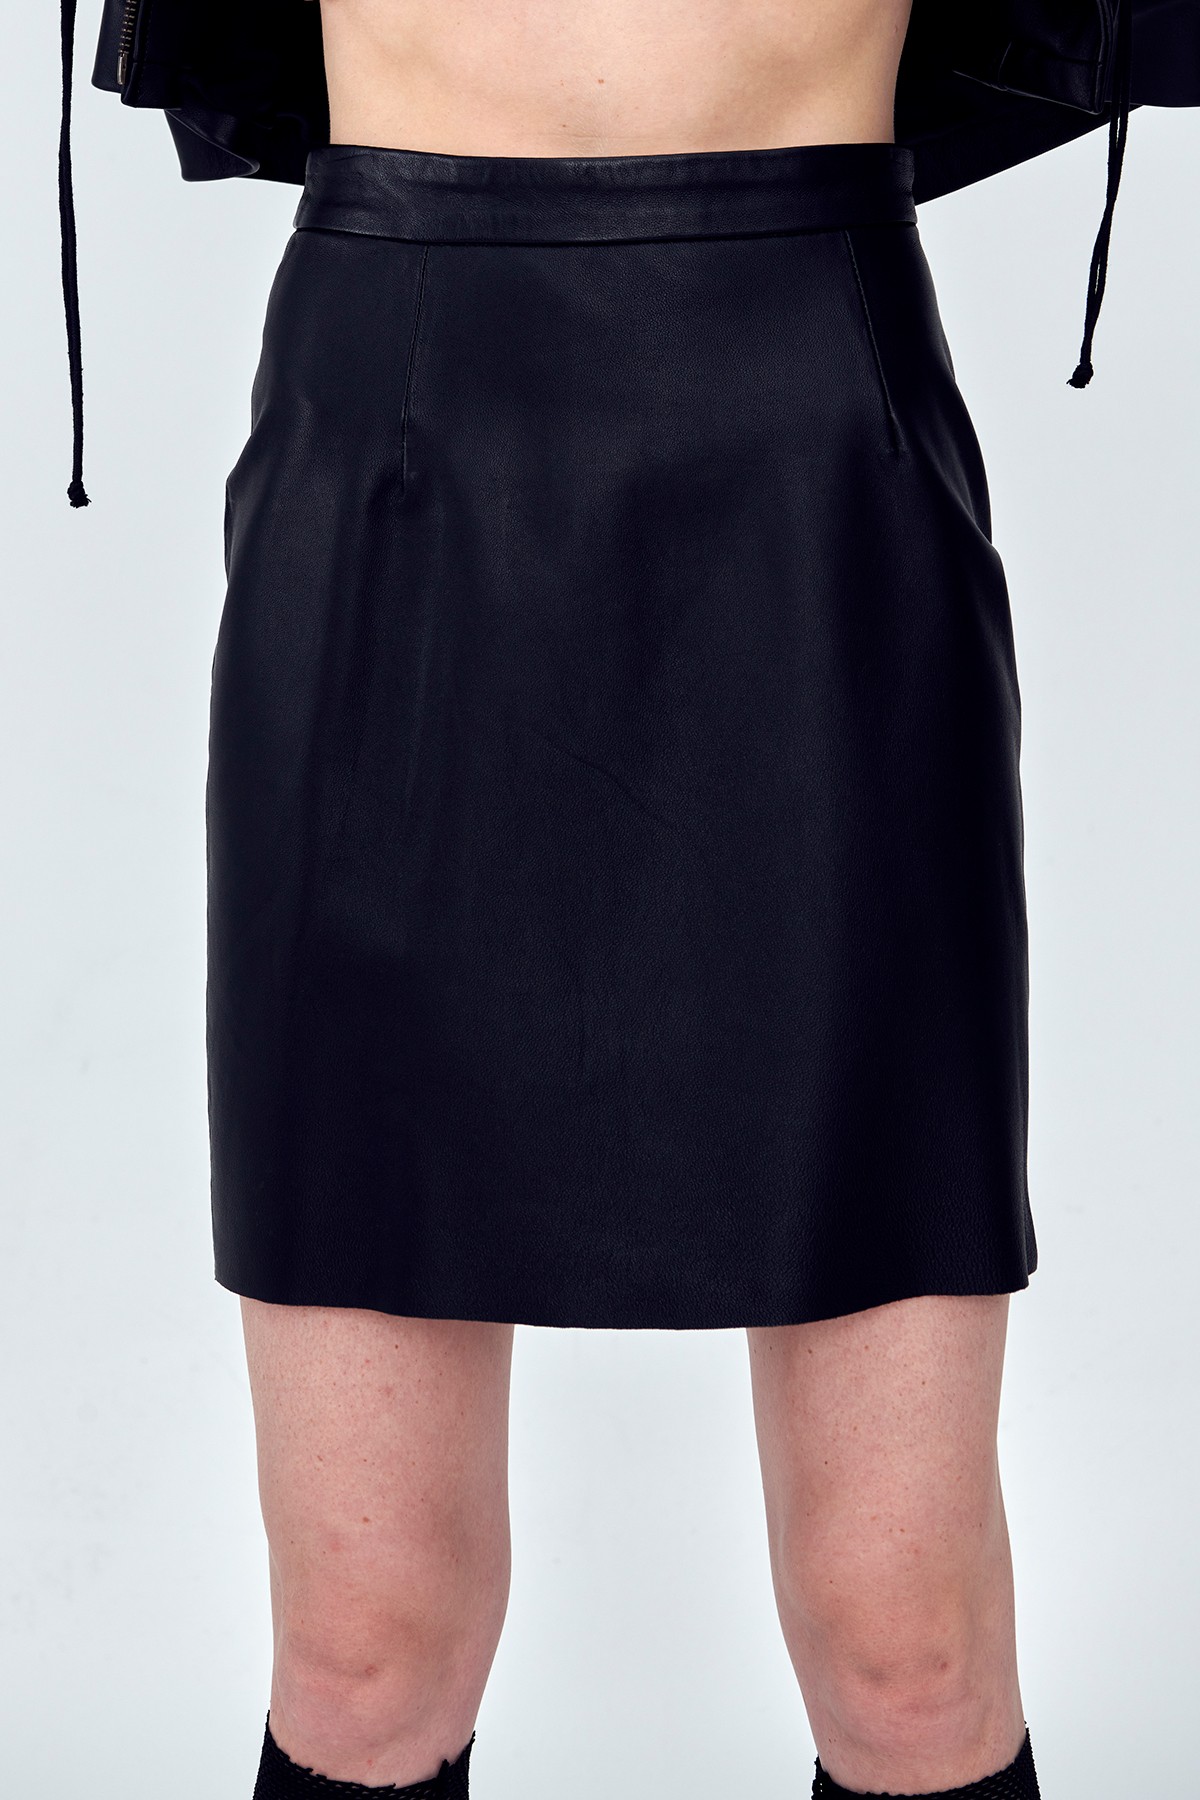 REGULAR Black Leather Skirt